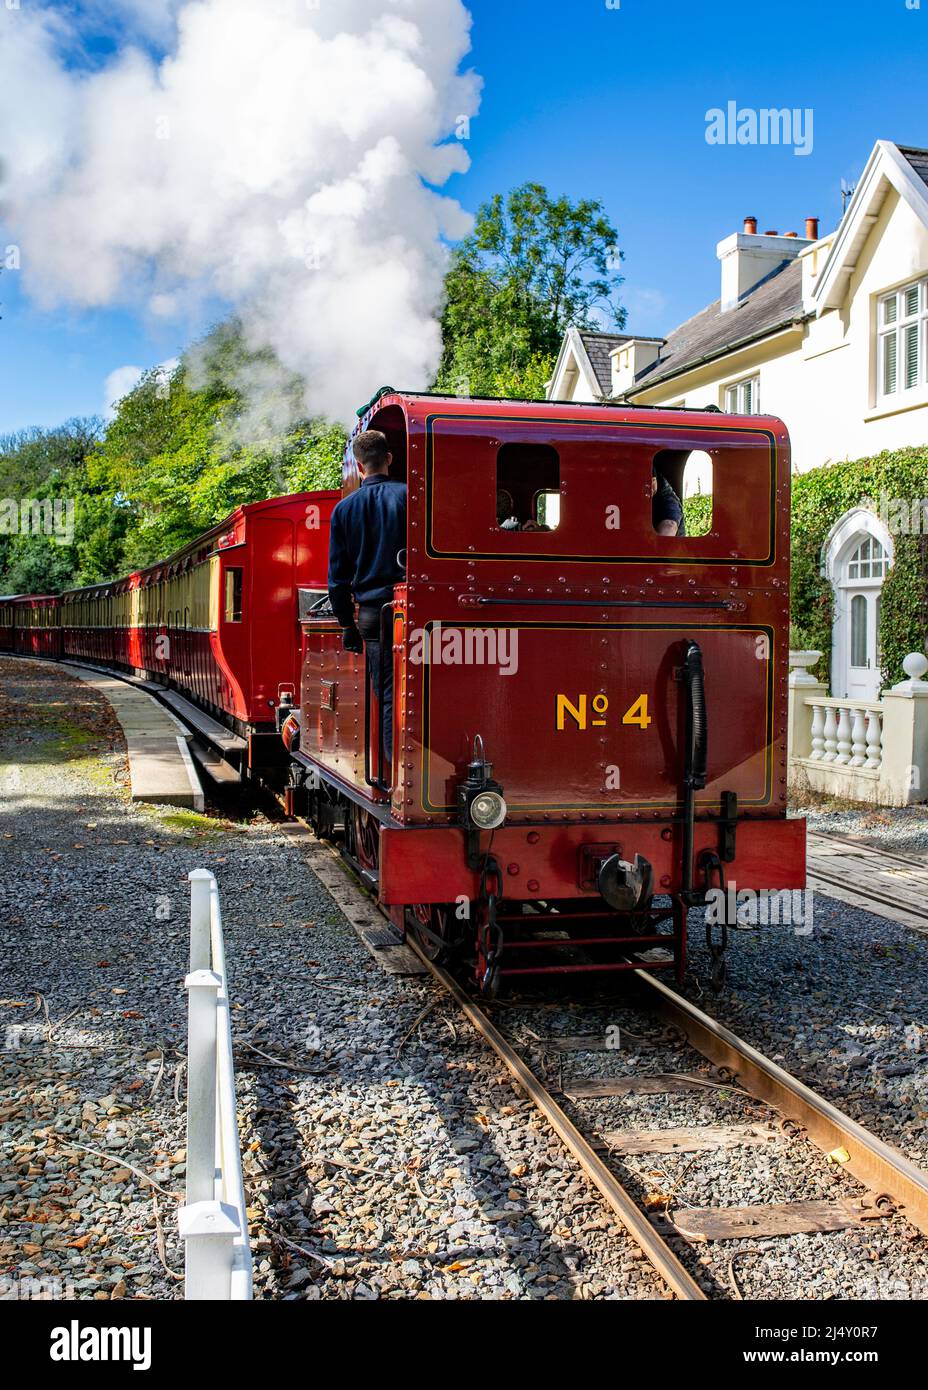 Isle of Man Railways motore a vapore n. 4 che lascia Port Soderick Station sull'isola di Man con un carico completo di carrozze dirette a Douglas Foto Stock